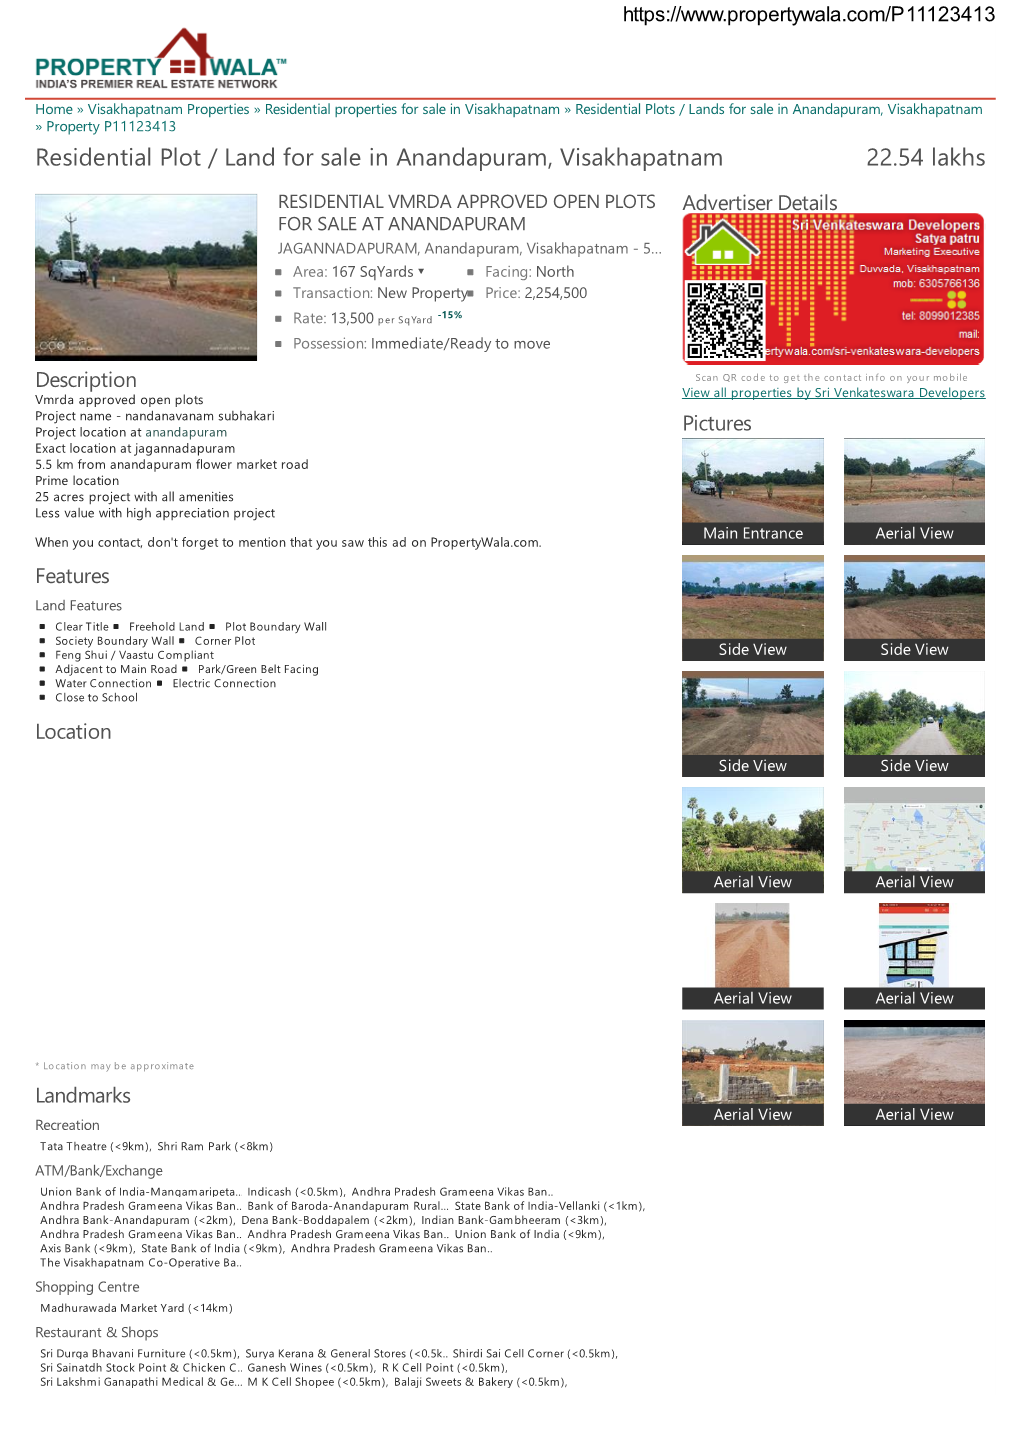 Residential Plot / Land for Sale in Anandapuram